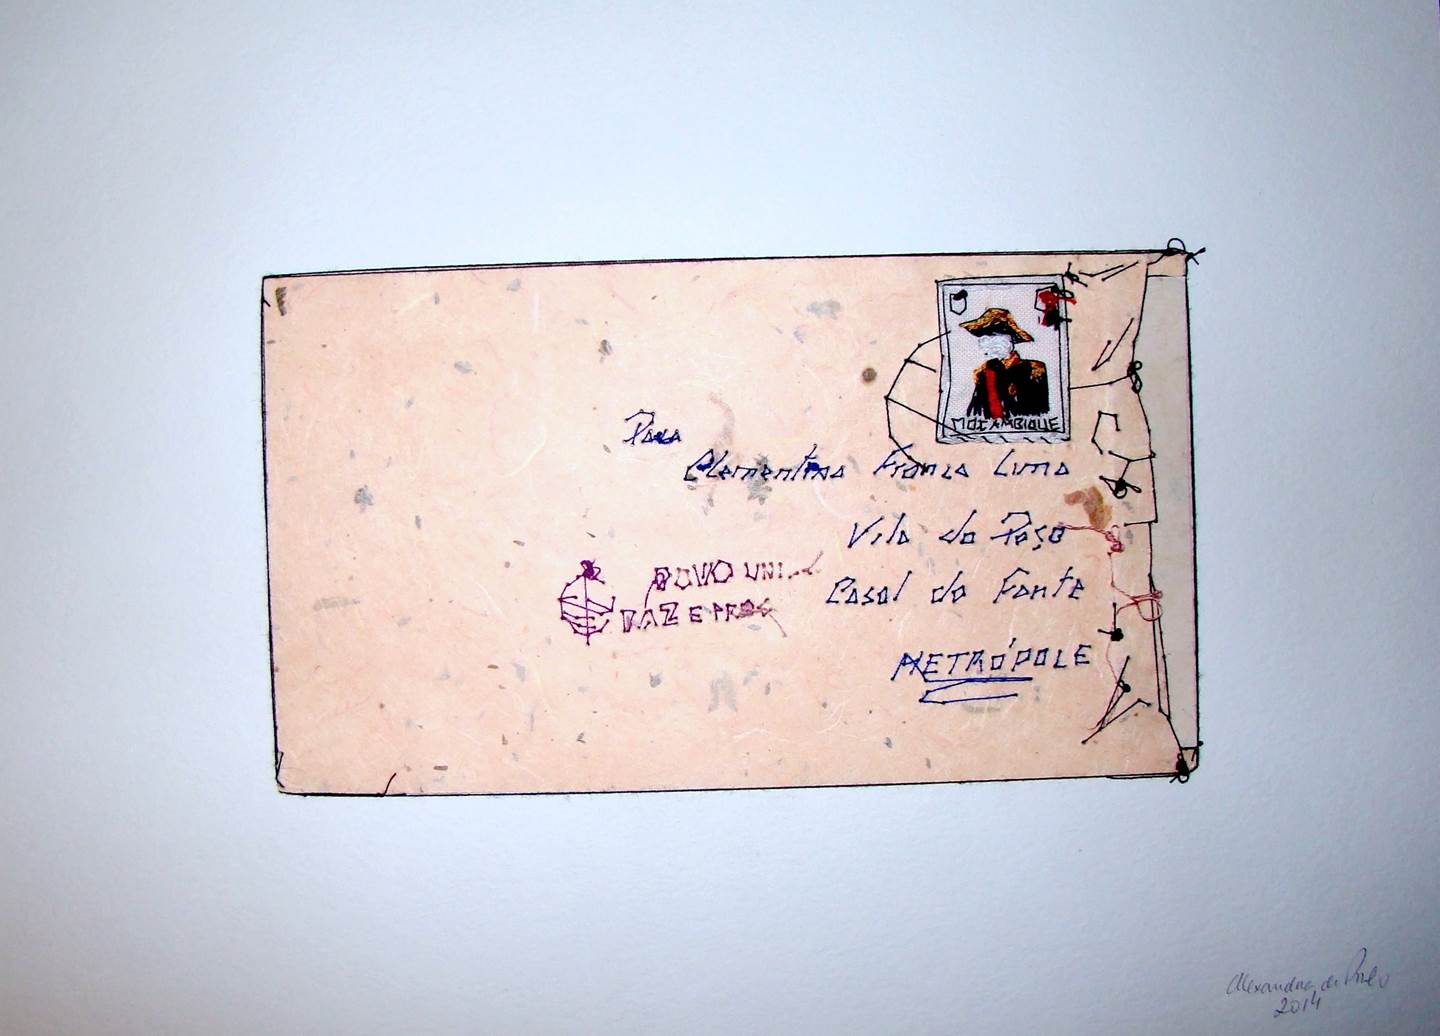 Carta de Moçambique, original   Drawing and Illustration by Alexandra de Pinho